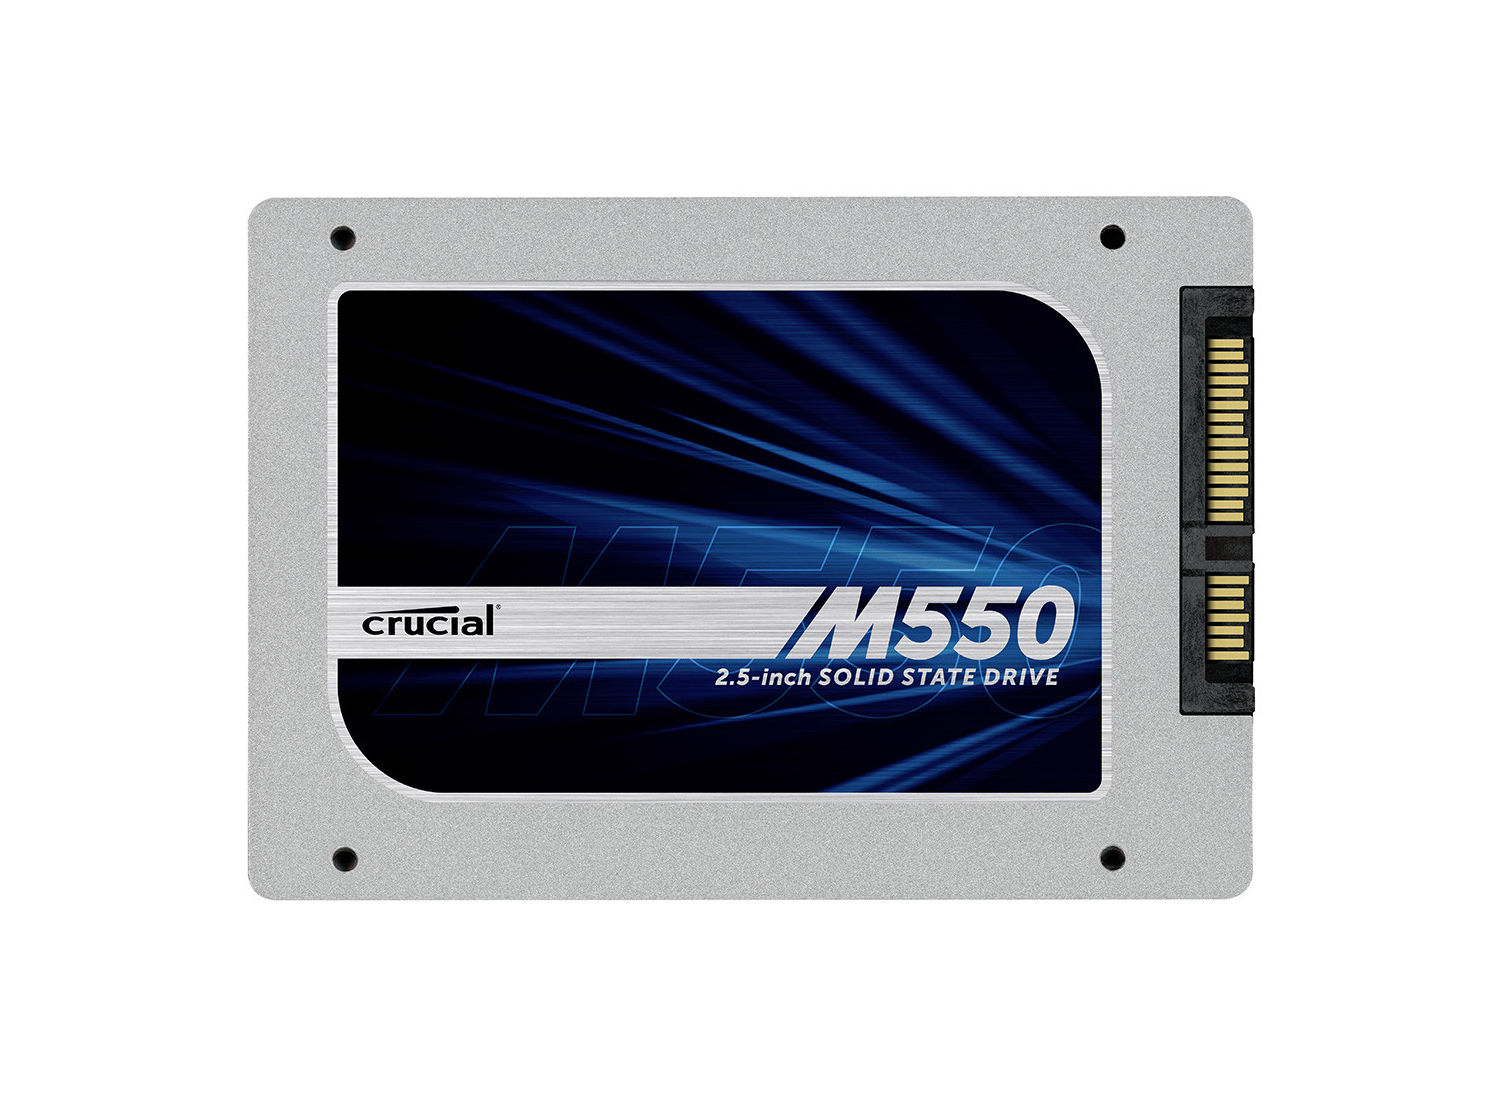 Immagine pubblicata in relazione al seguente contenuto: Crucial commercializza la linea di drive SSD da 2.5-inch M550 | Nome immagine: news20928_Crucial-M550-SSD_1.jpg